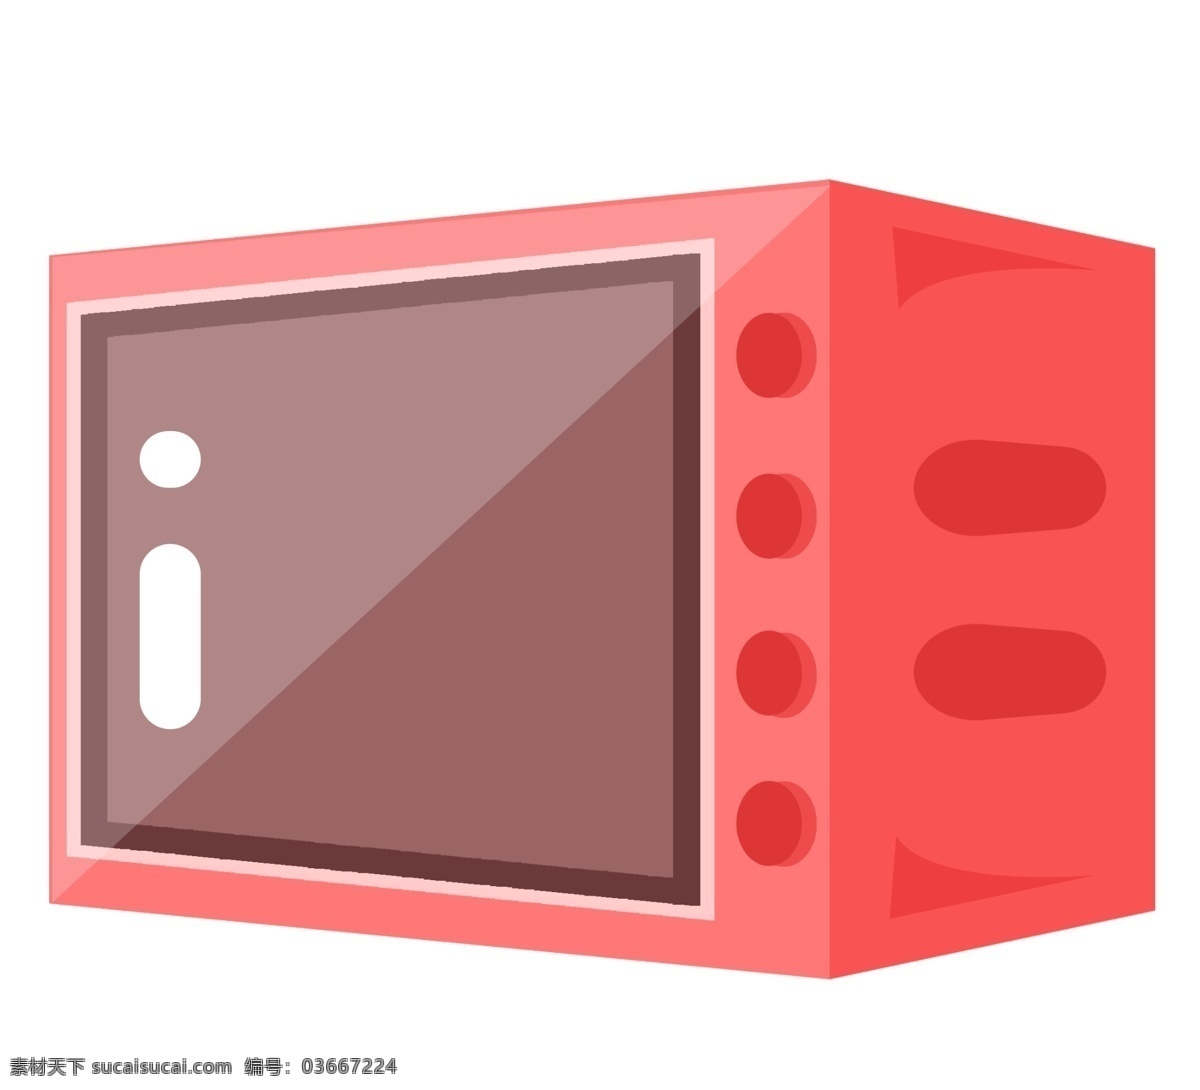 红色方形烤箱 烤箱 家电 电器